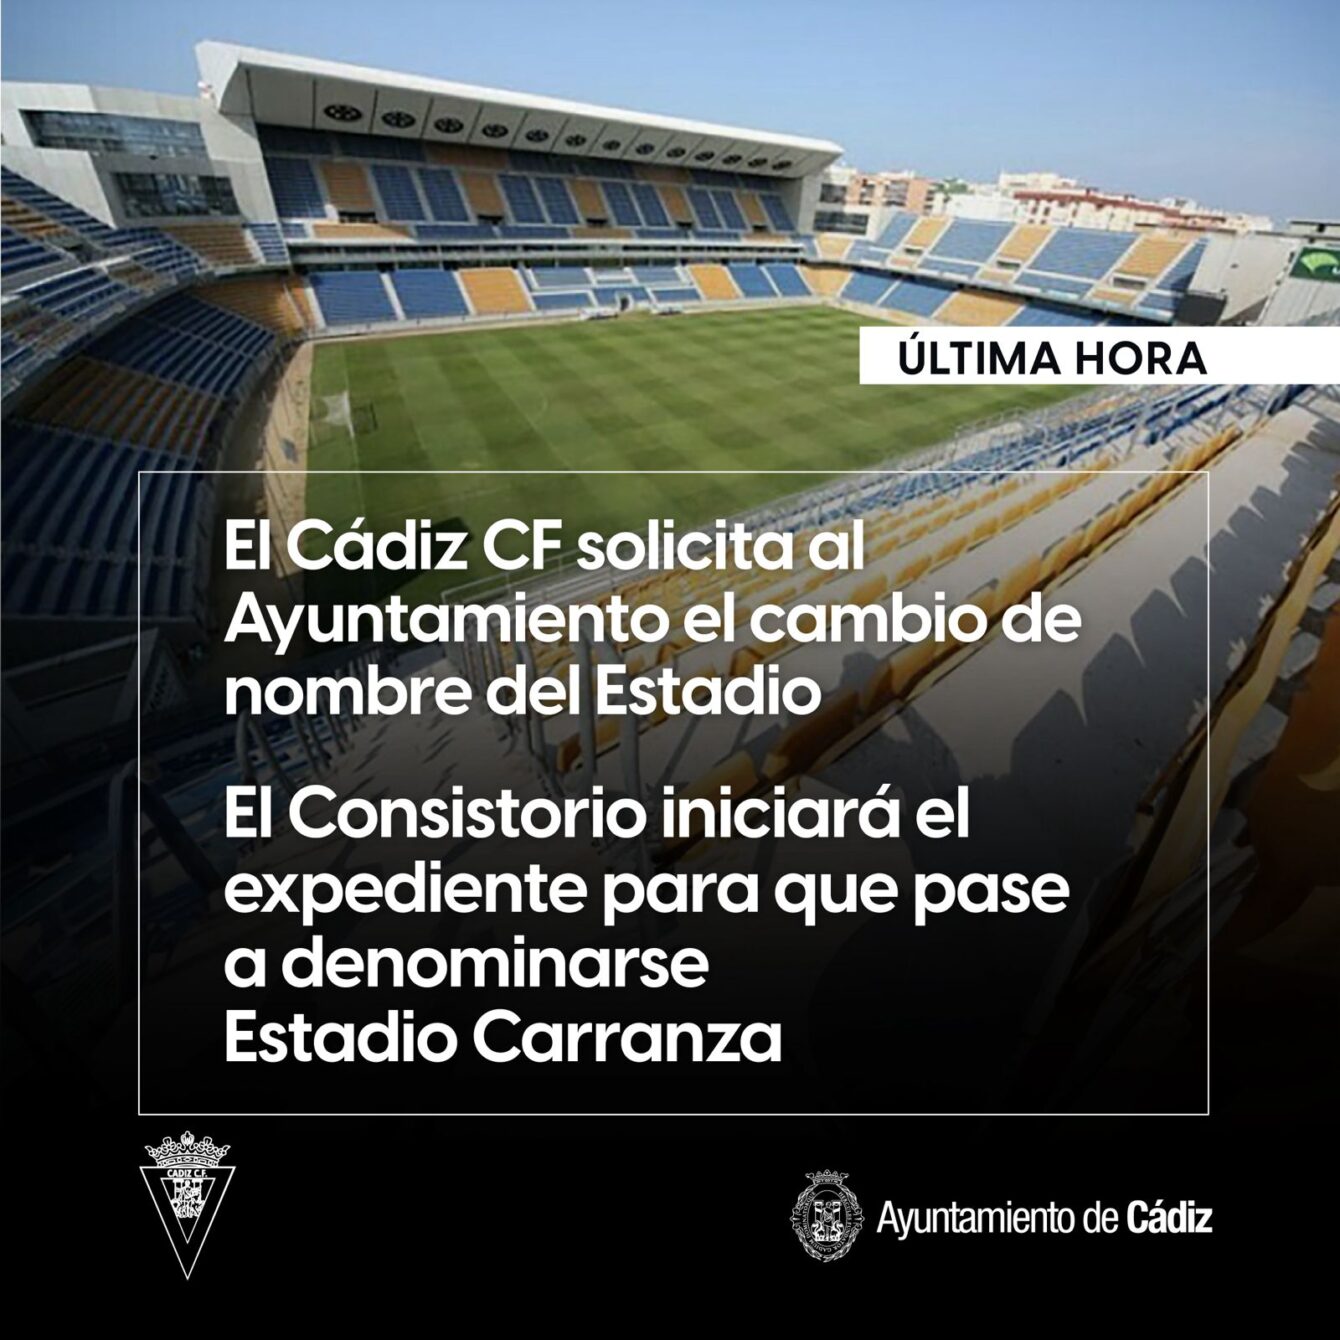 Estadio Carranza